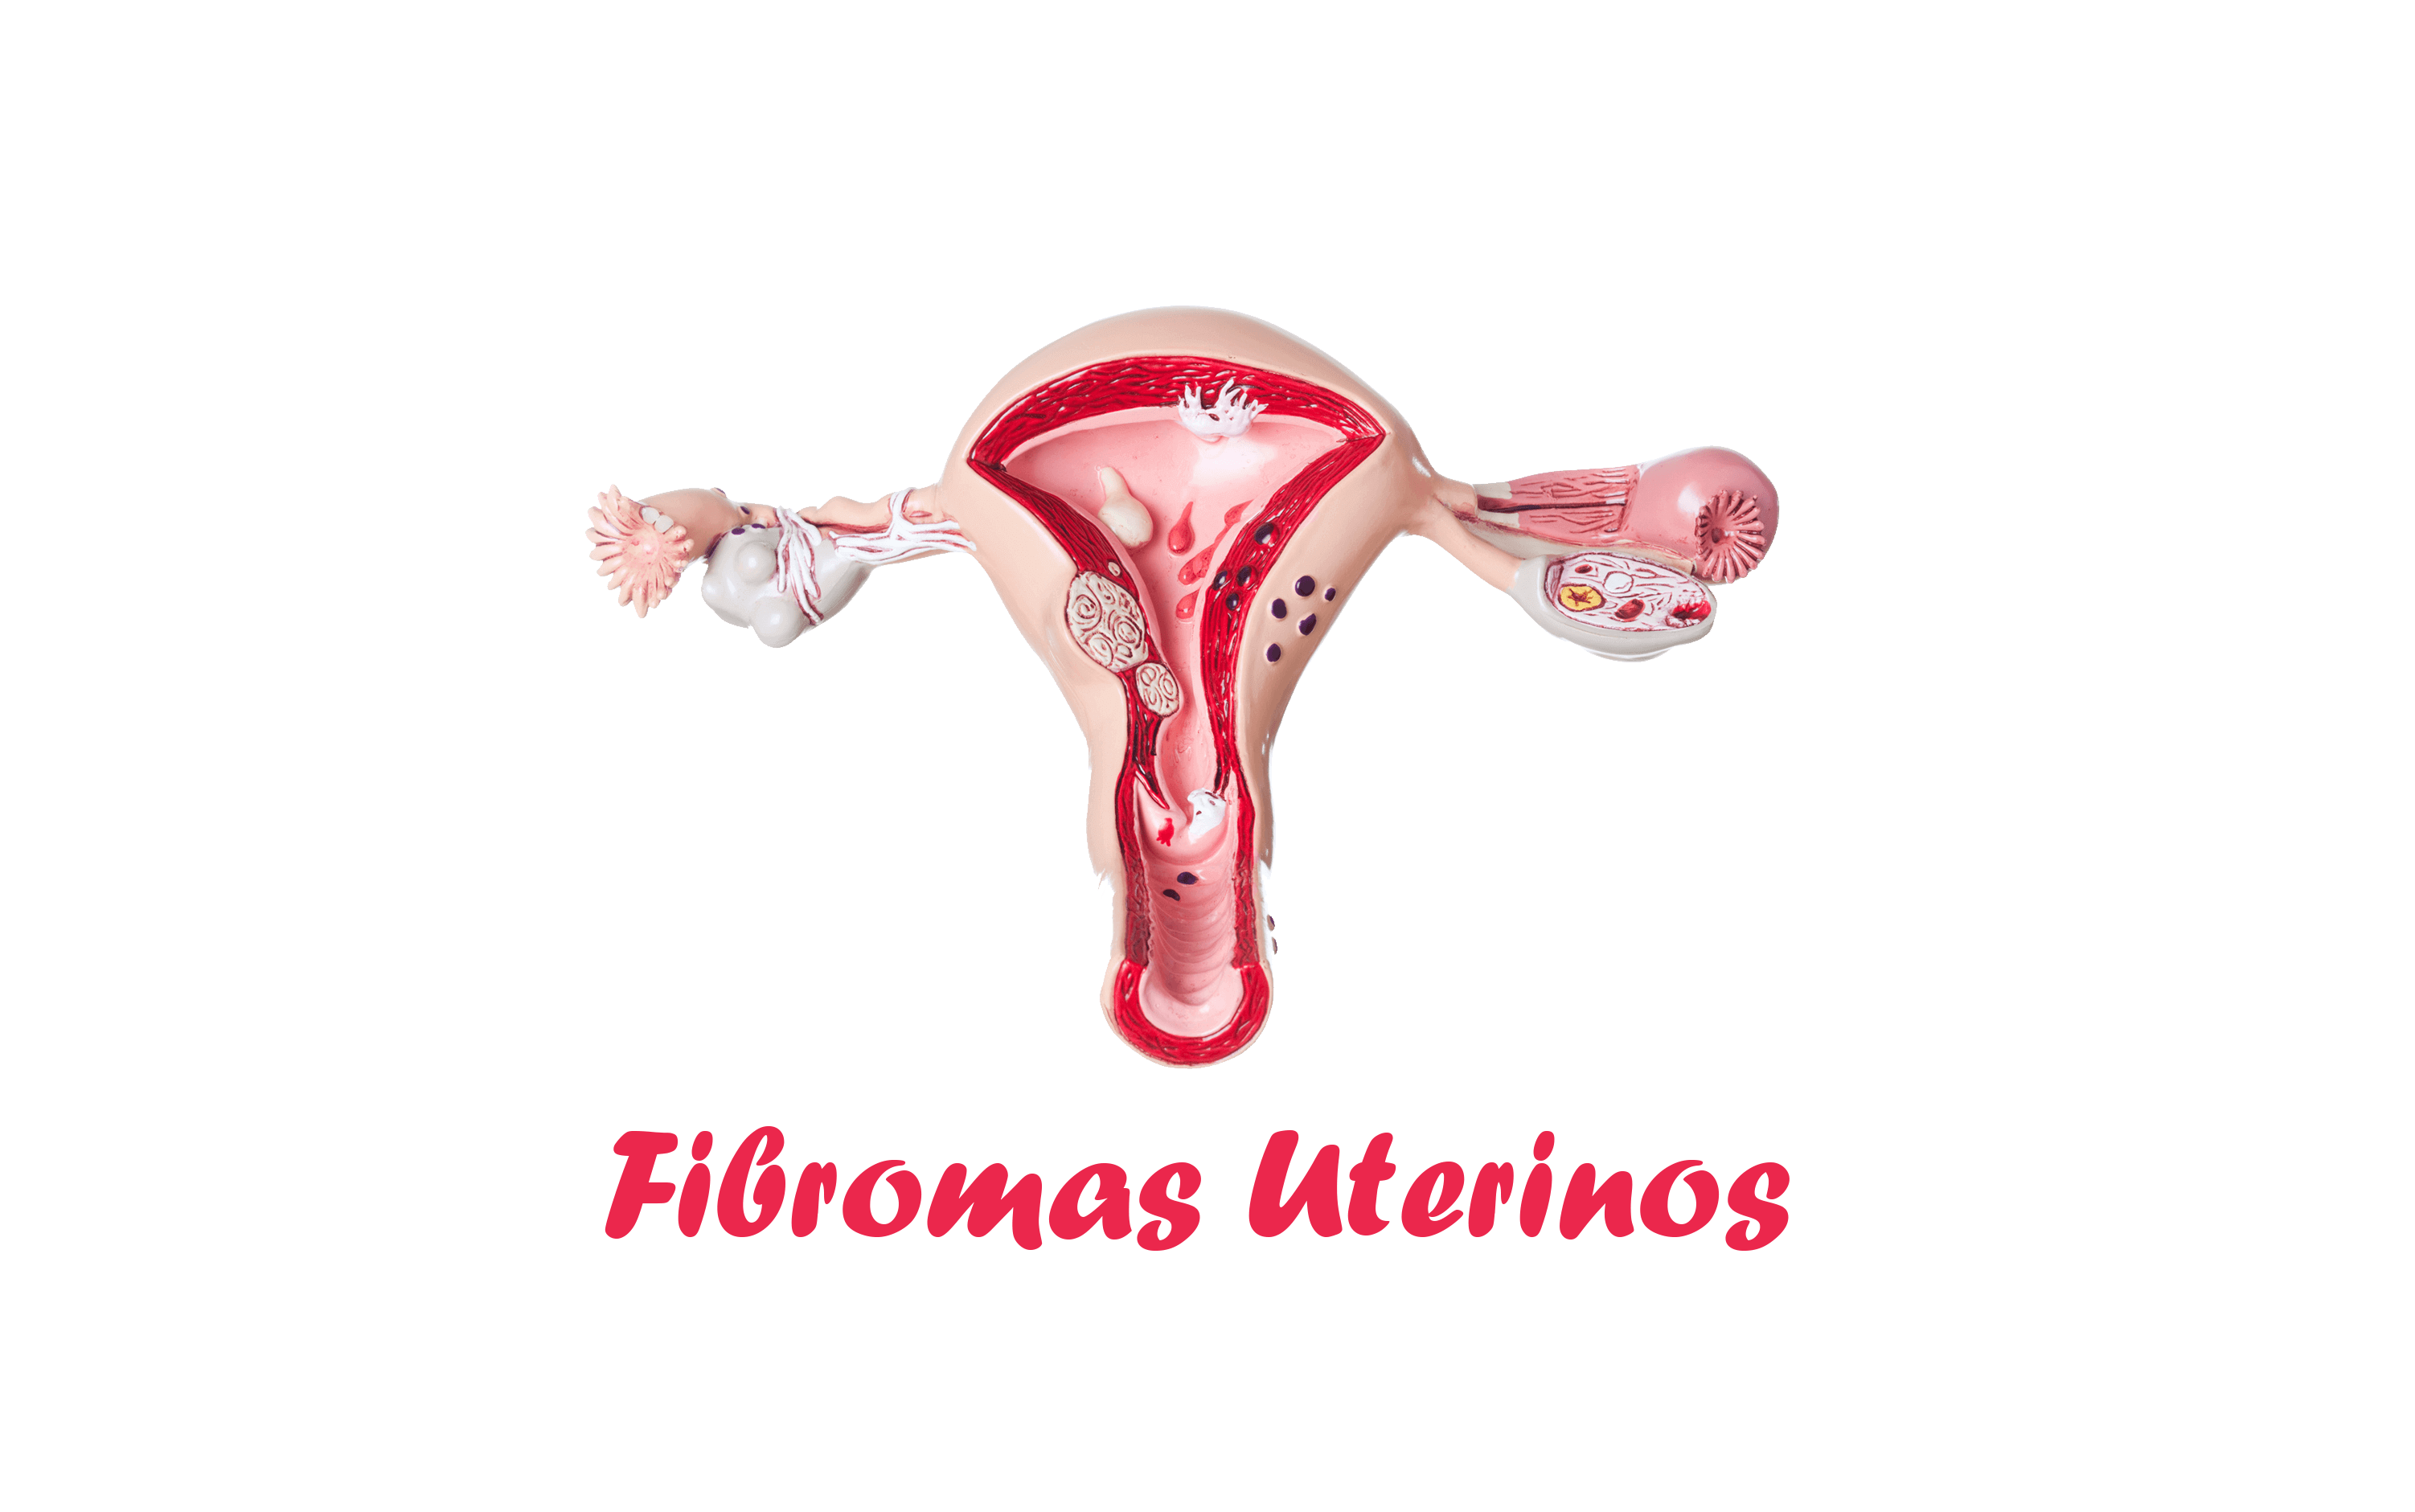 Fibromas Uterinos